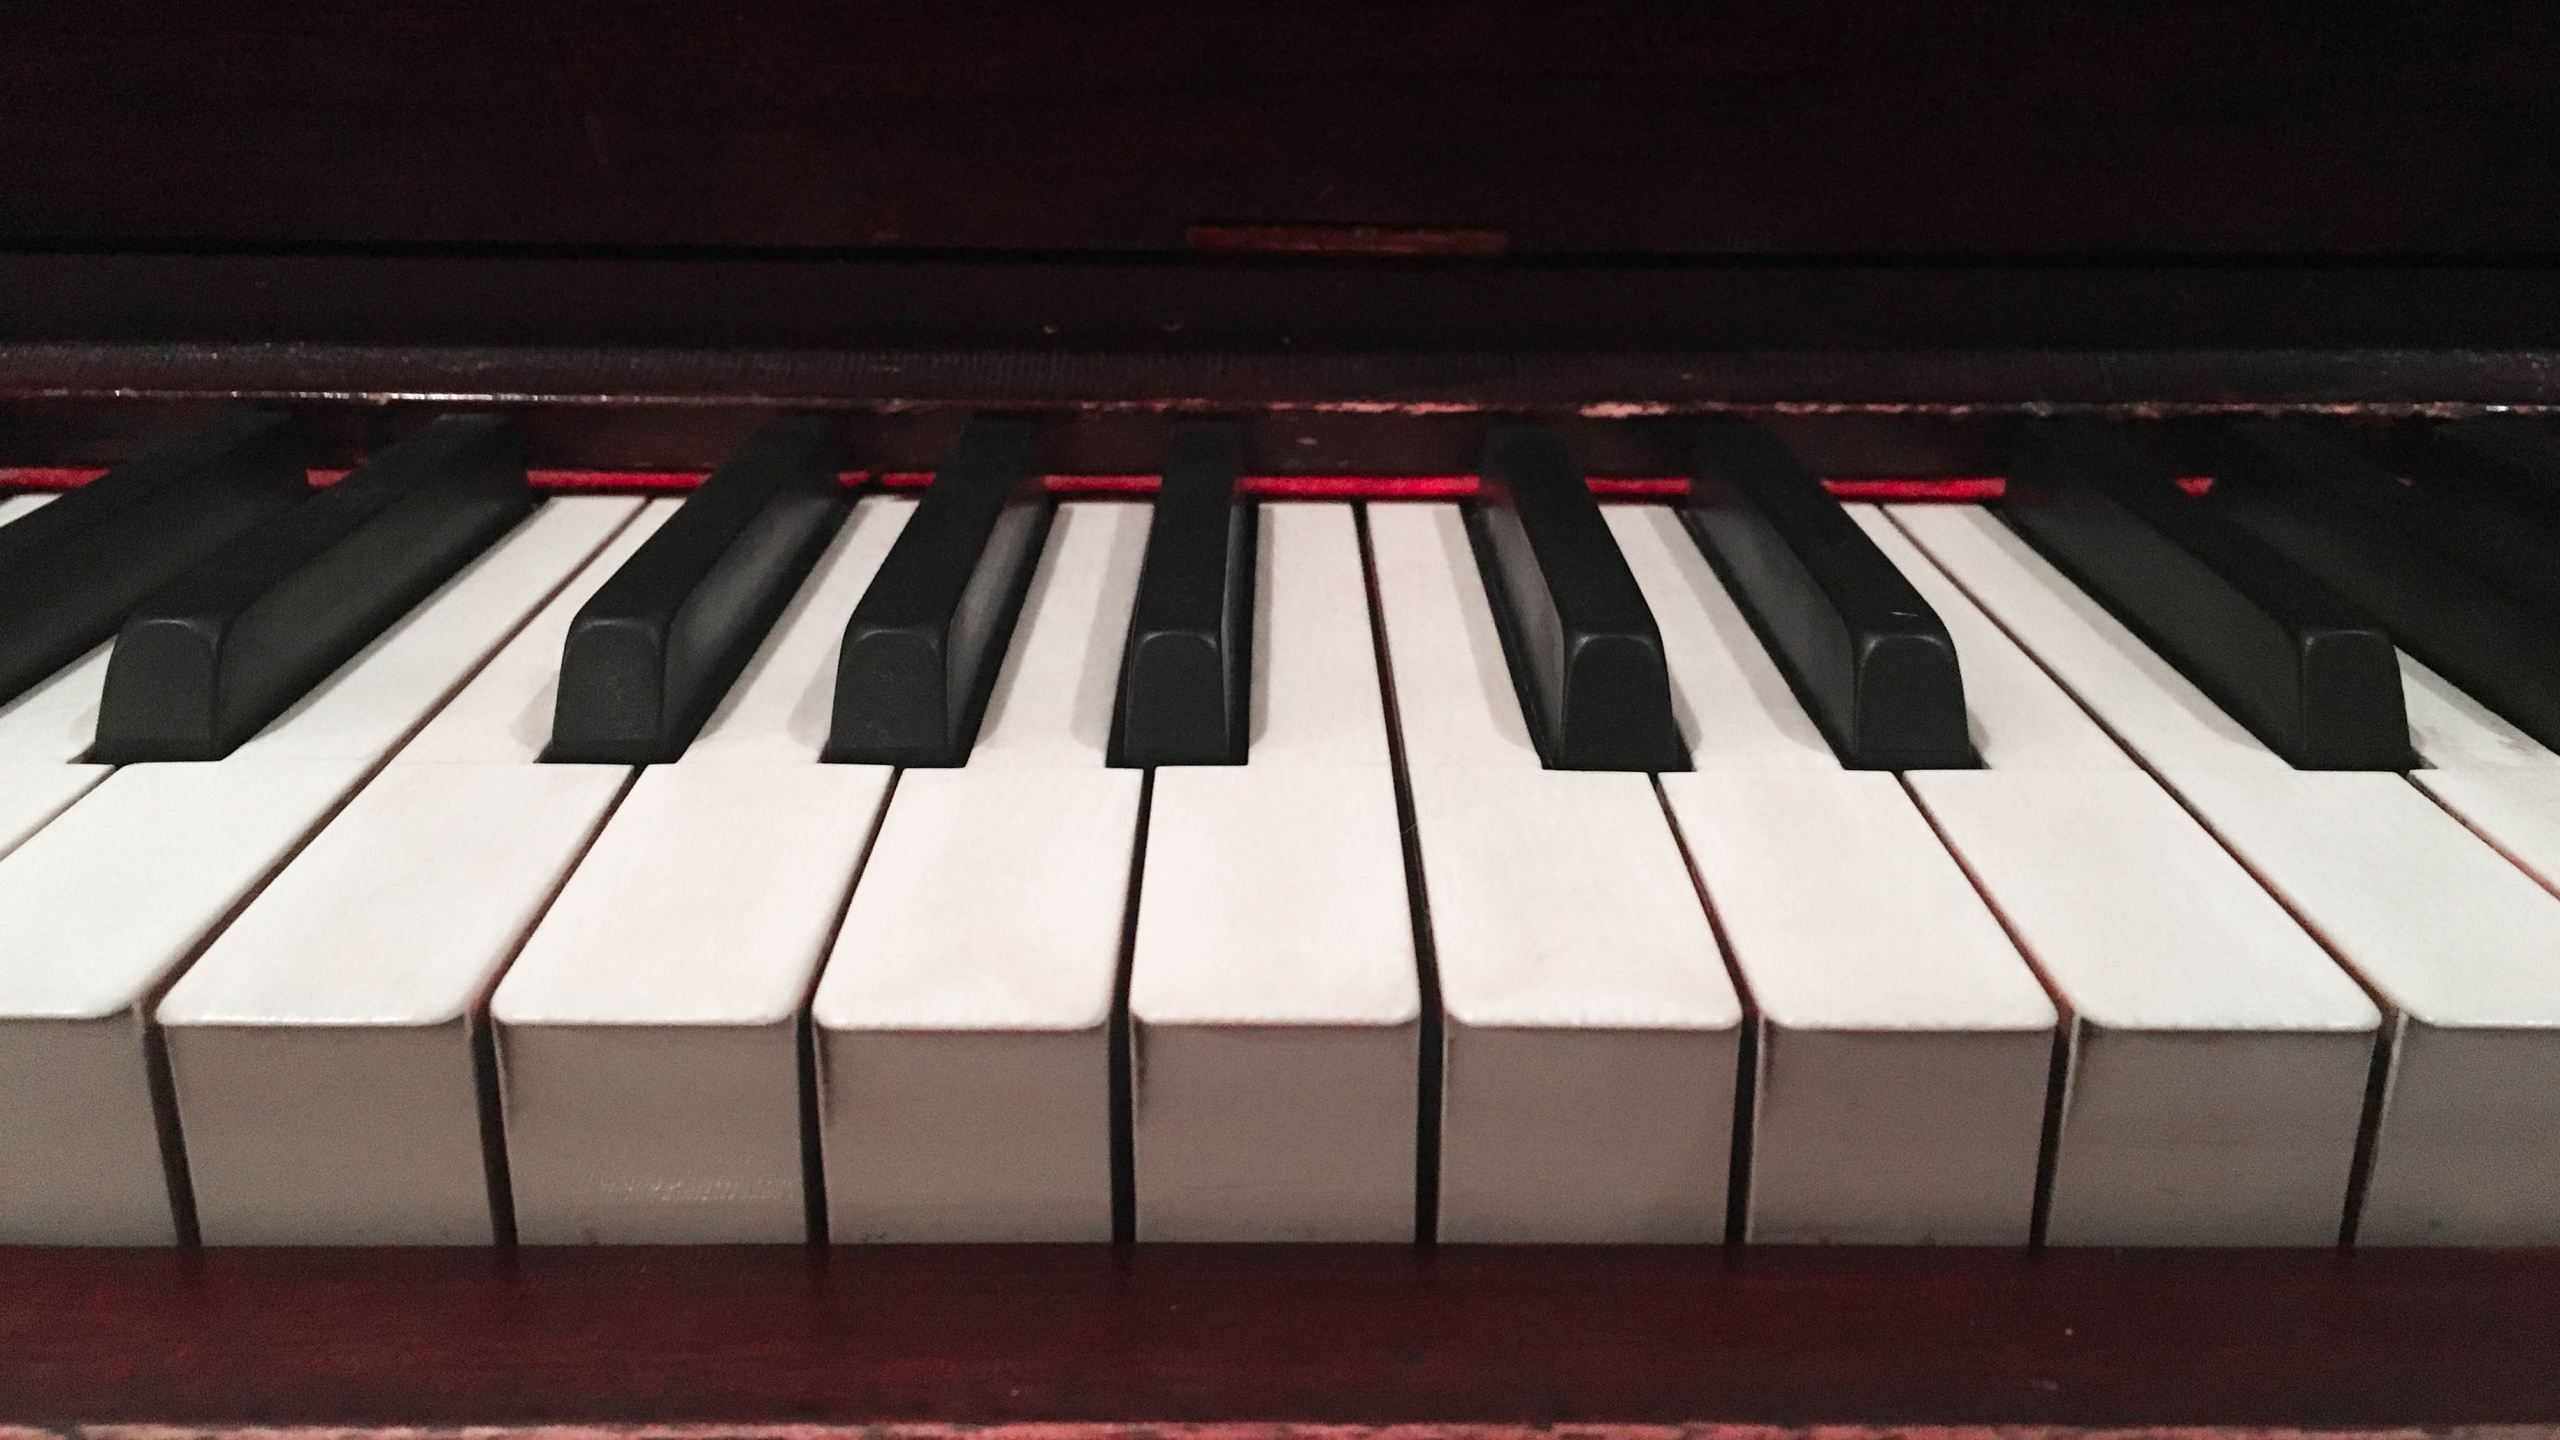 Klavier, Musikalische Tastatur, Tastatur, Schlüssel, Elektronisches Instrument. Wallpaper in 2560x1440 Resolution